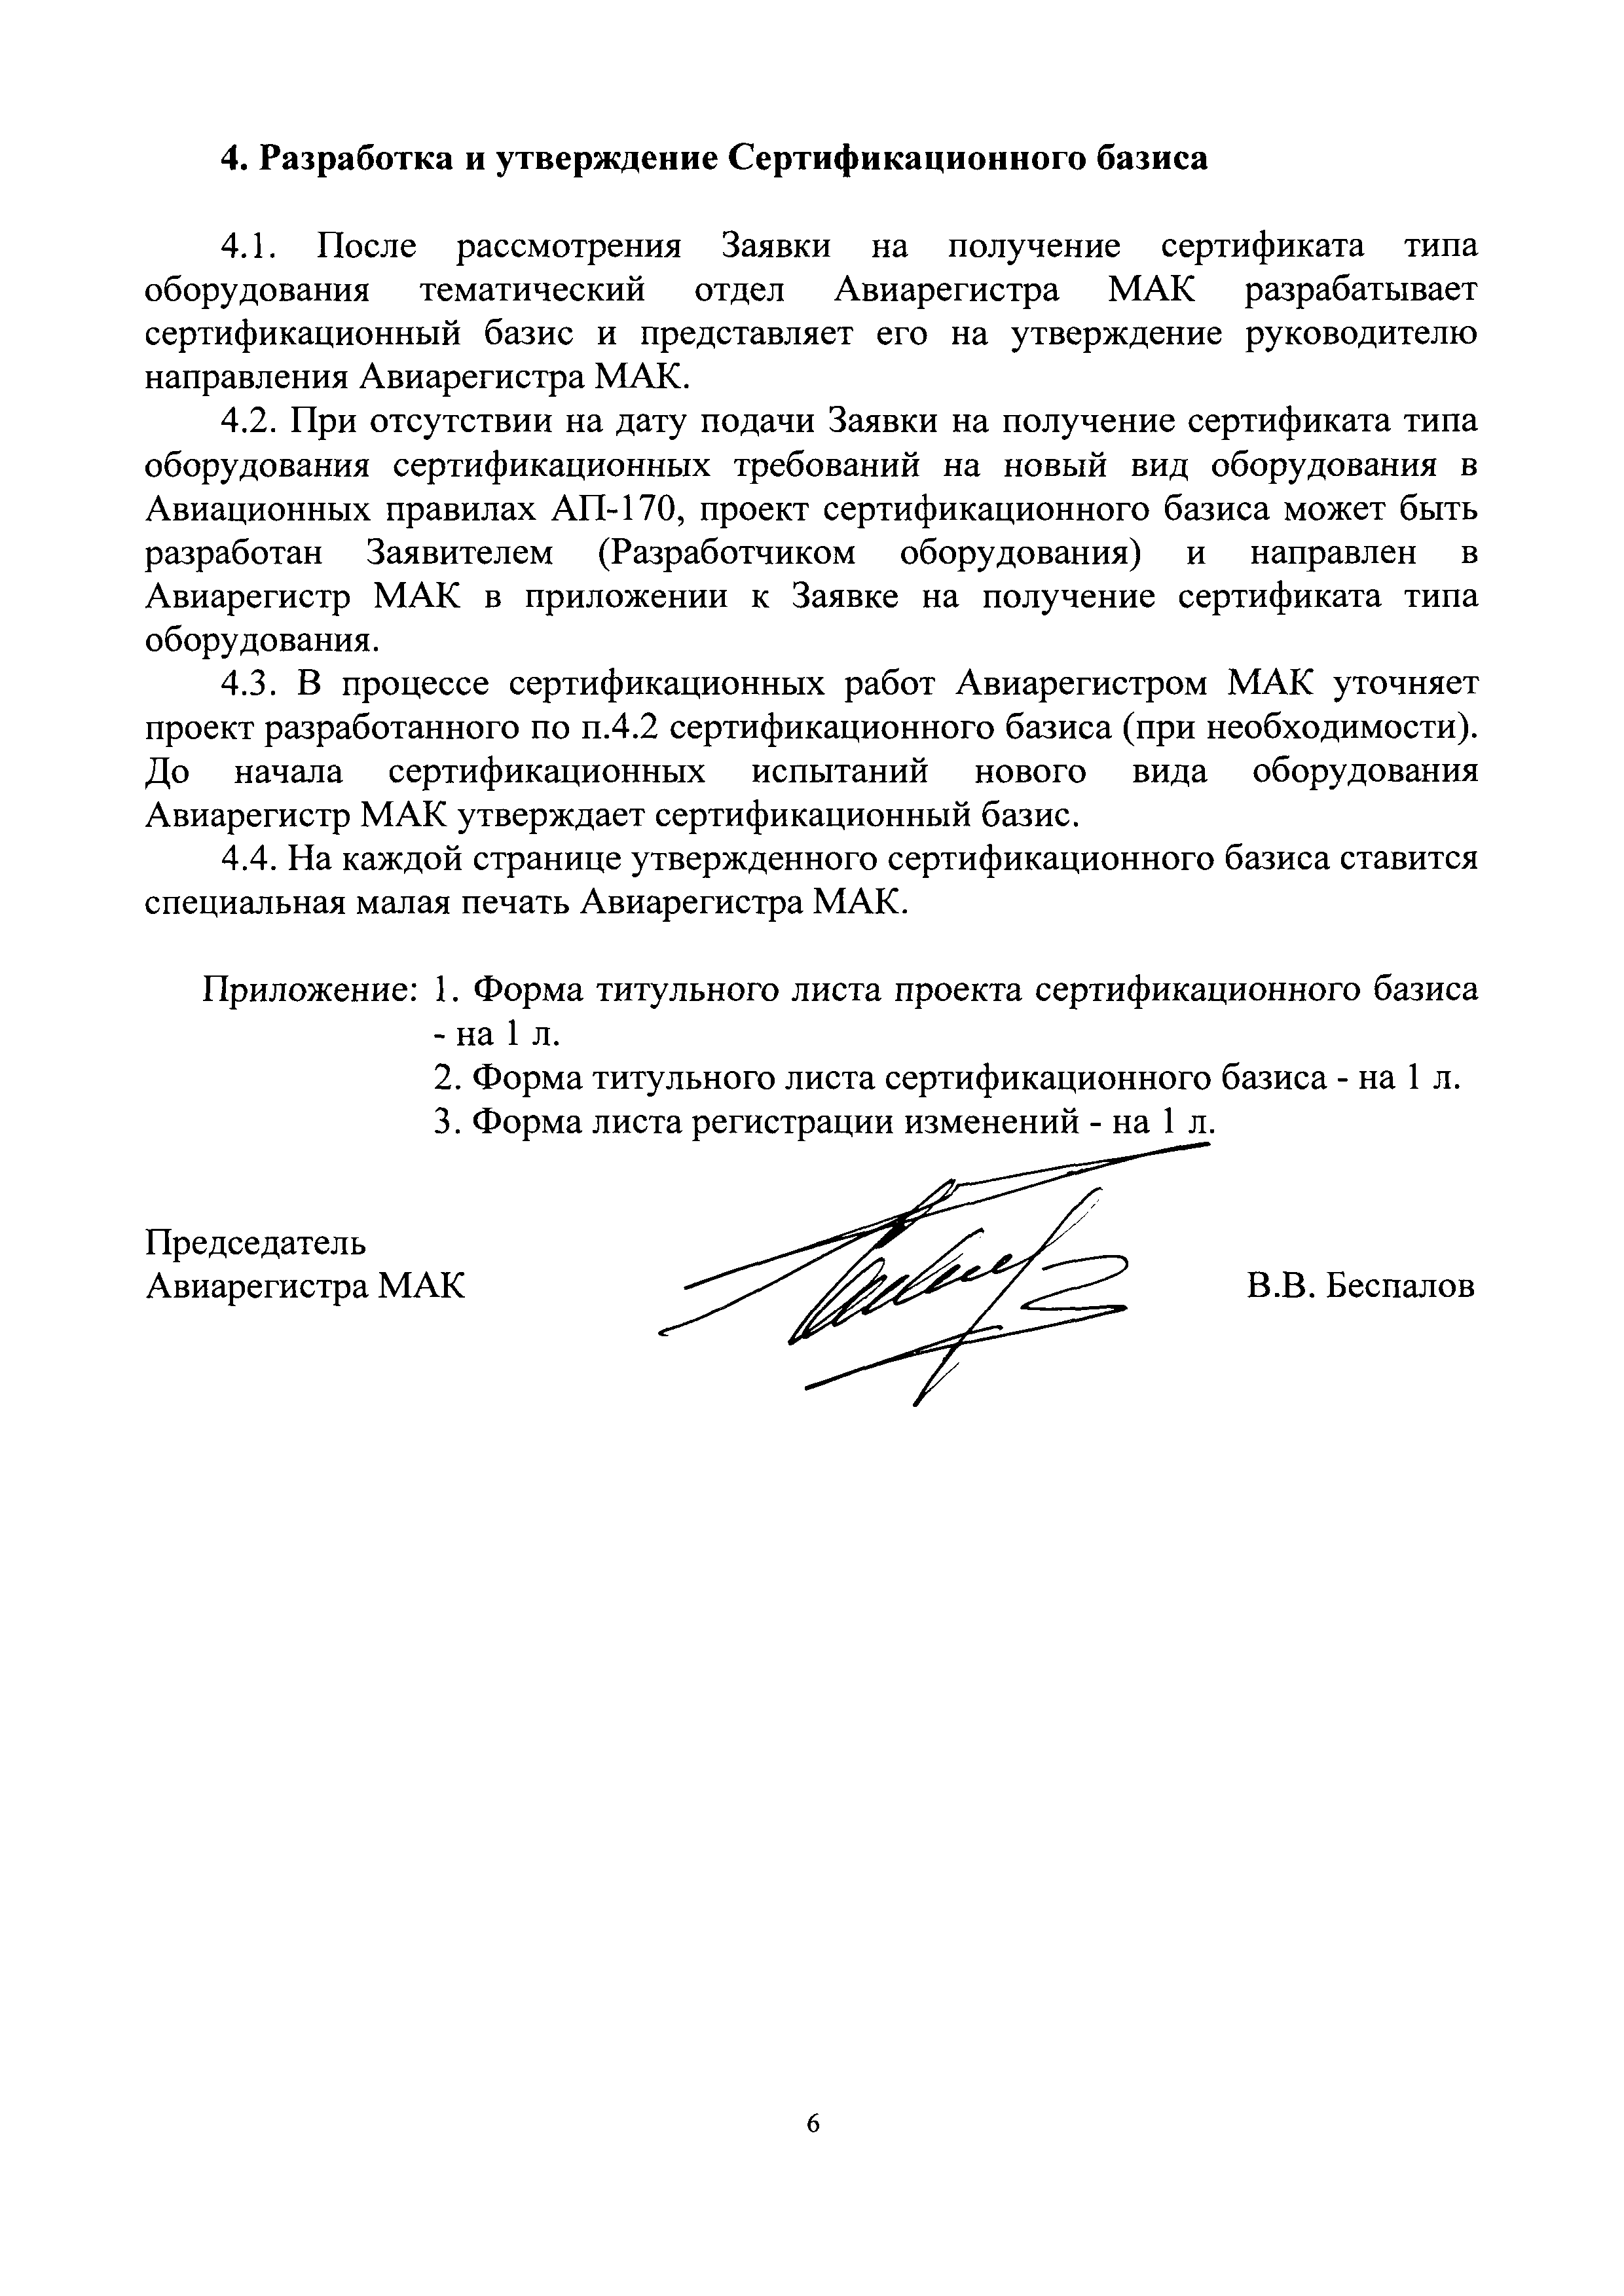 Директивное письмо 01-2017